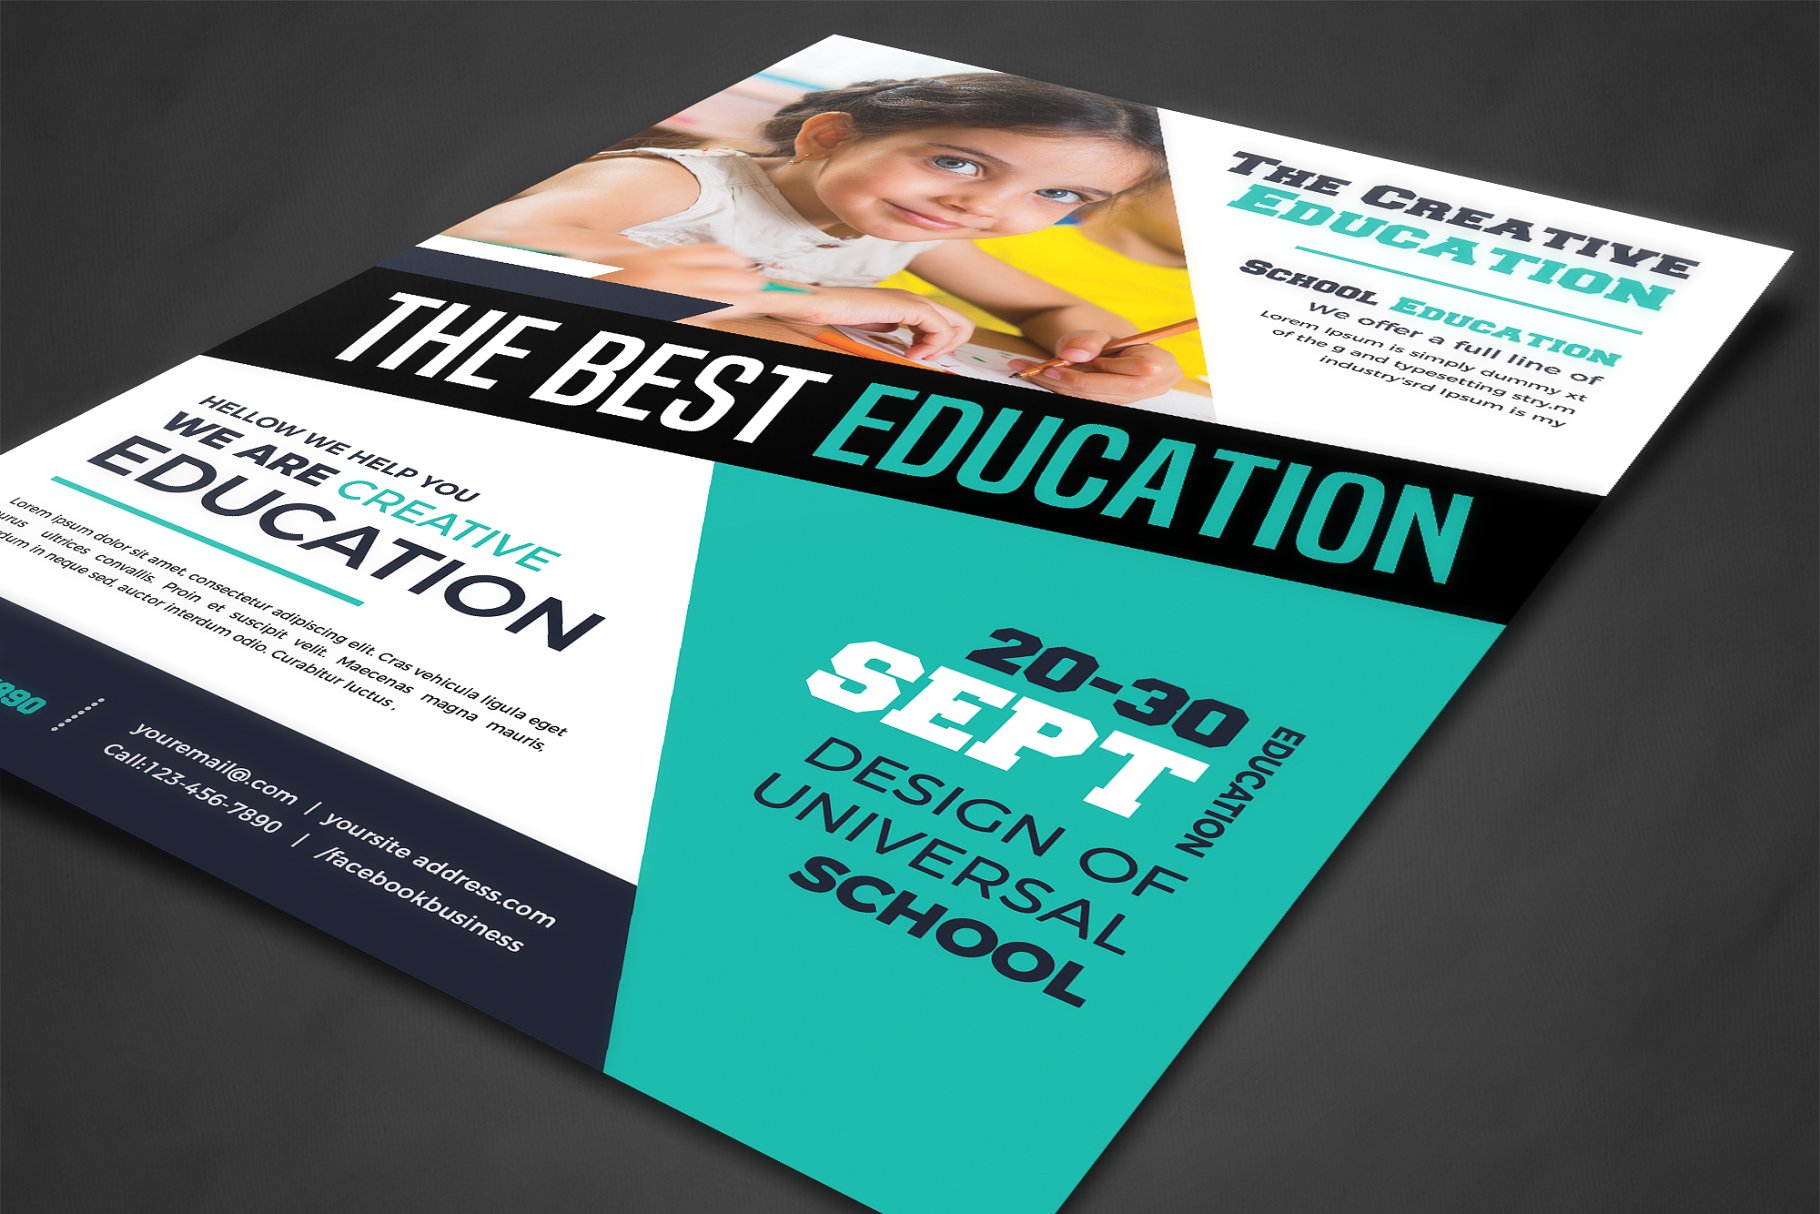 校园教育主题海报设计模板 School Education Flyer Templates插图(1)